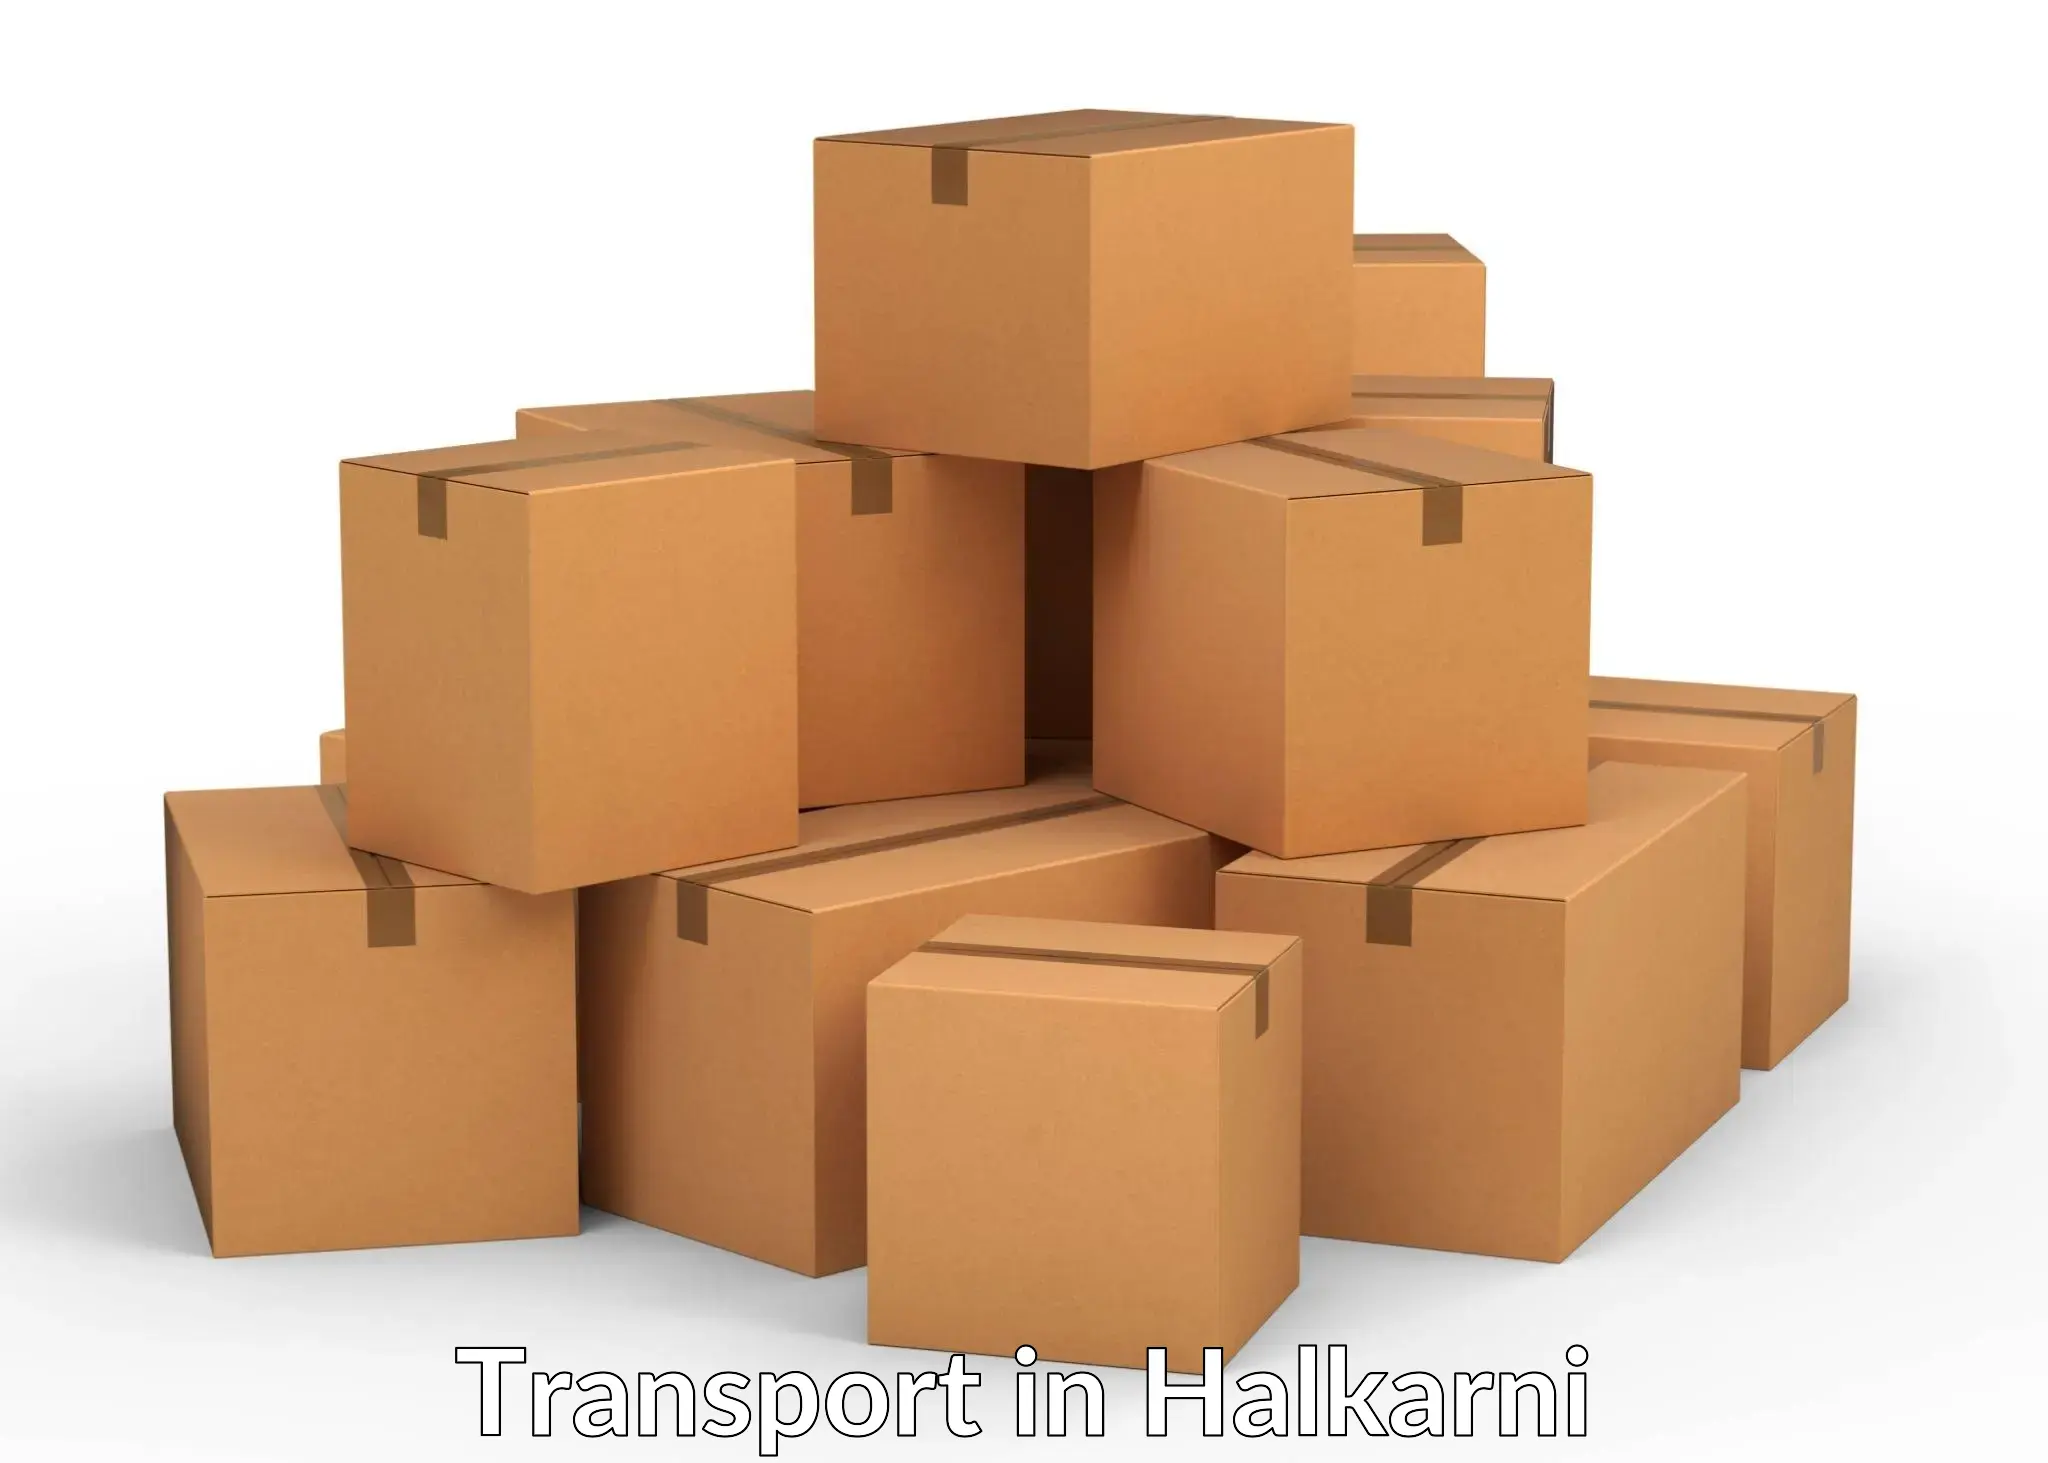 Shipping services in Halkarni